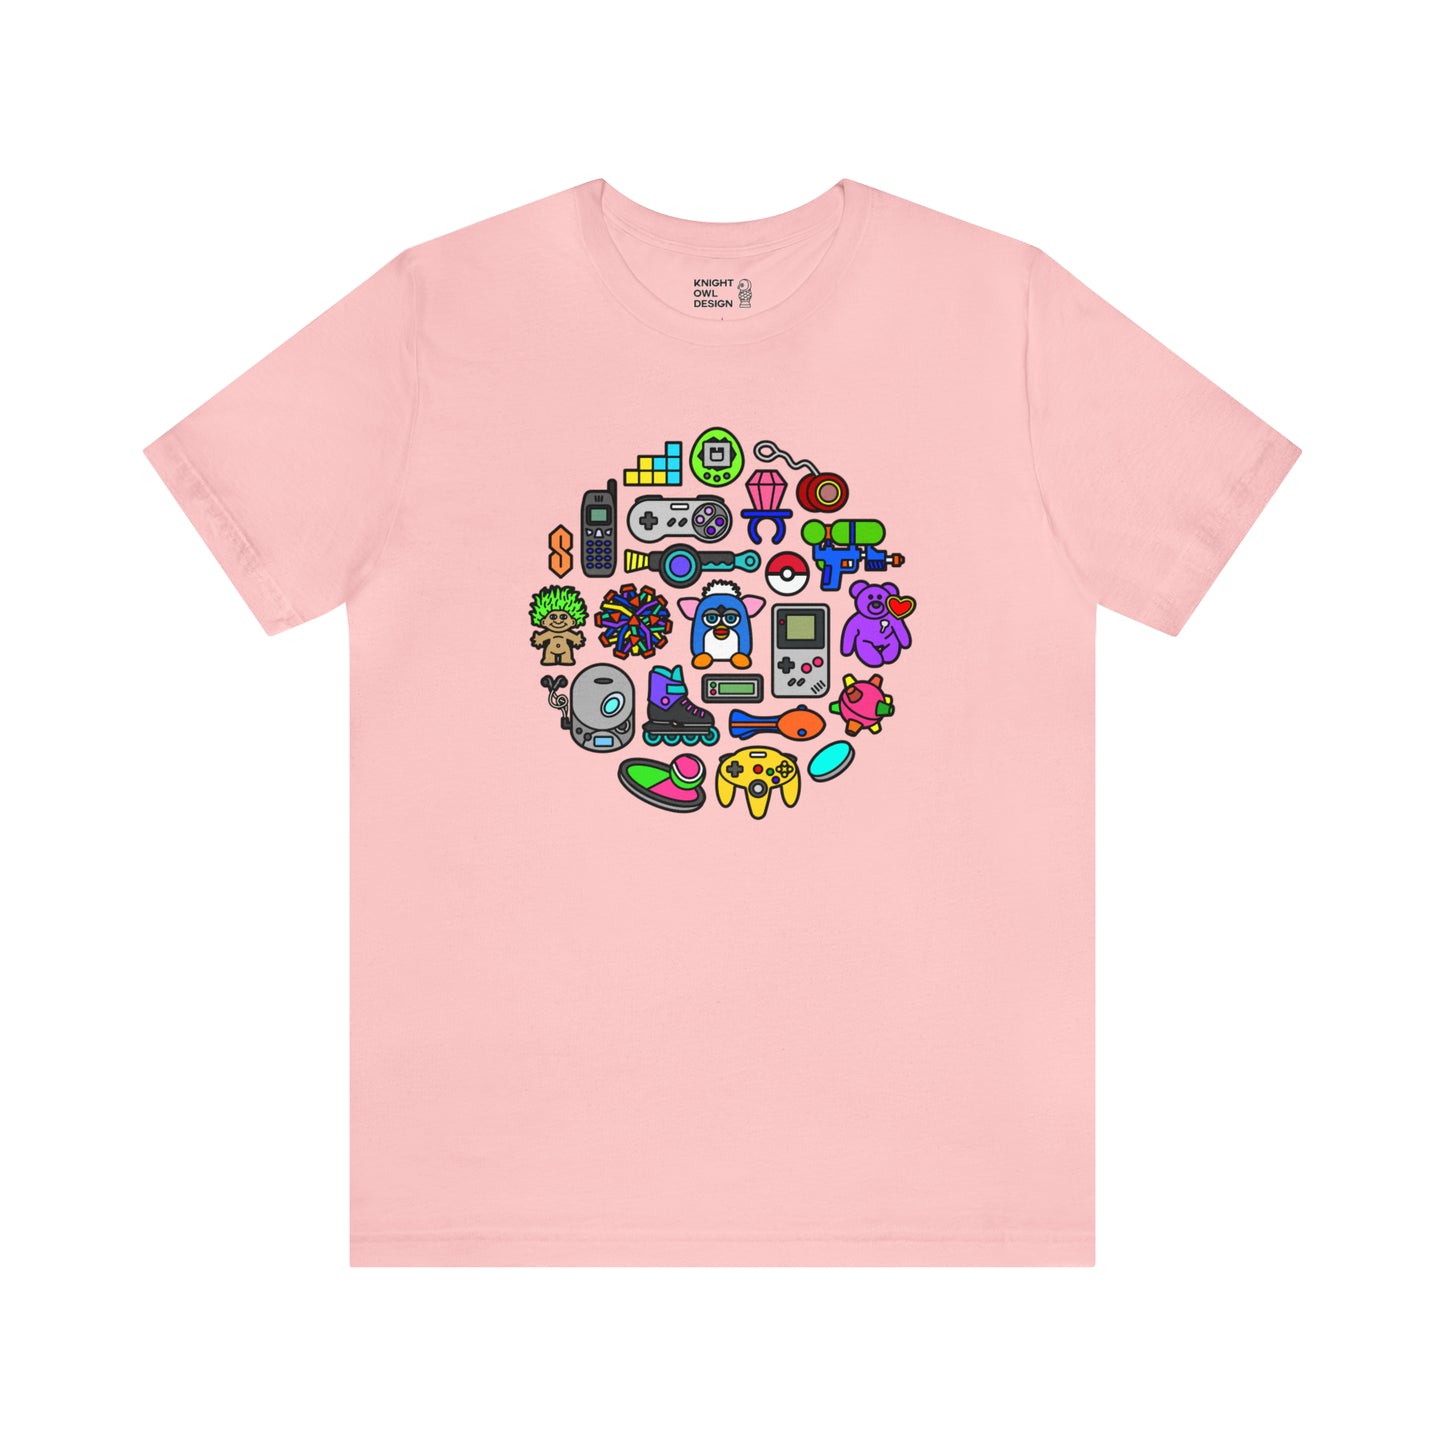 90s Nostalgia – Unisex Tee Shirt